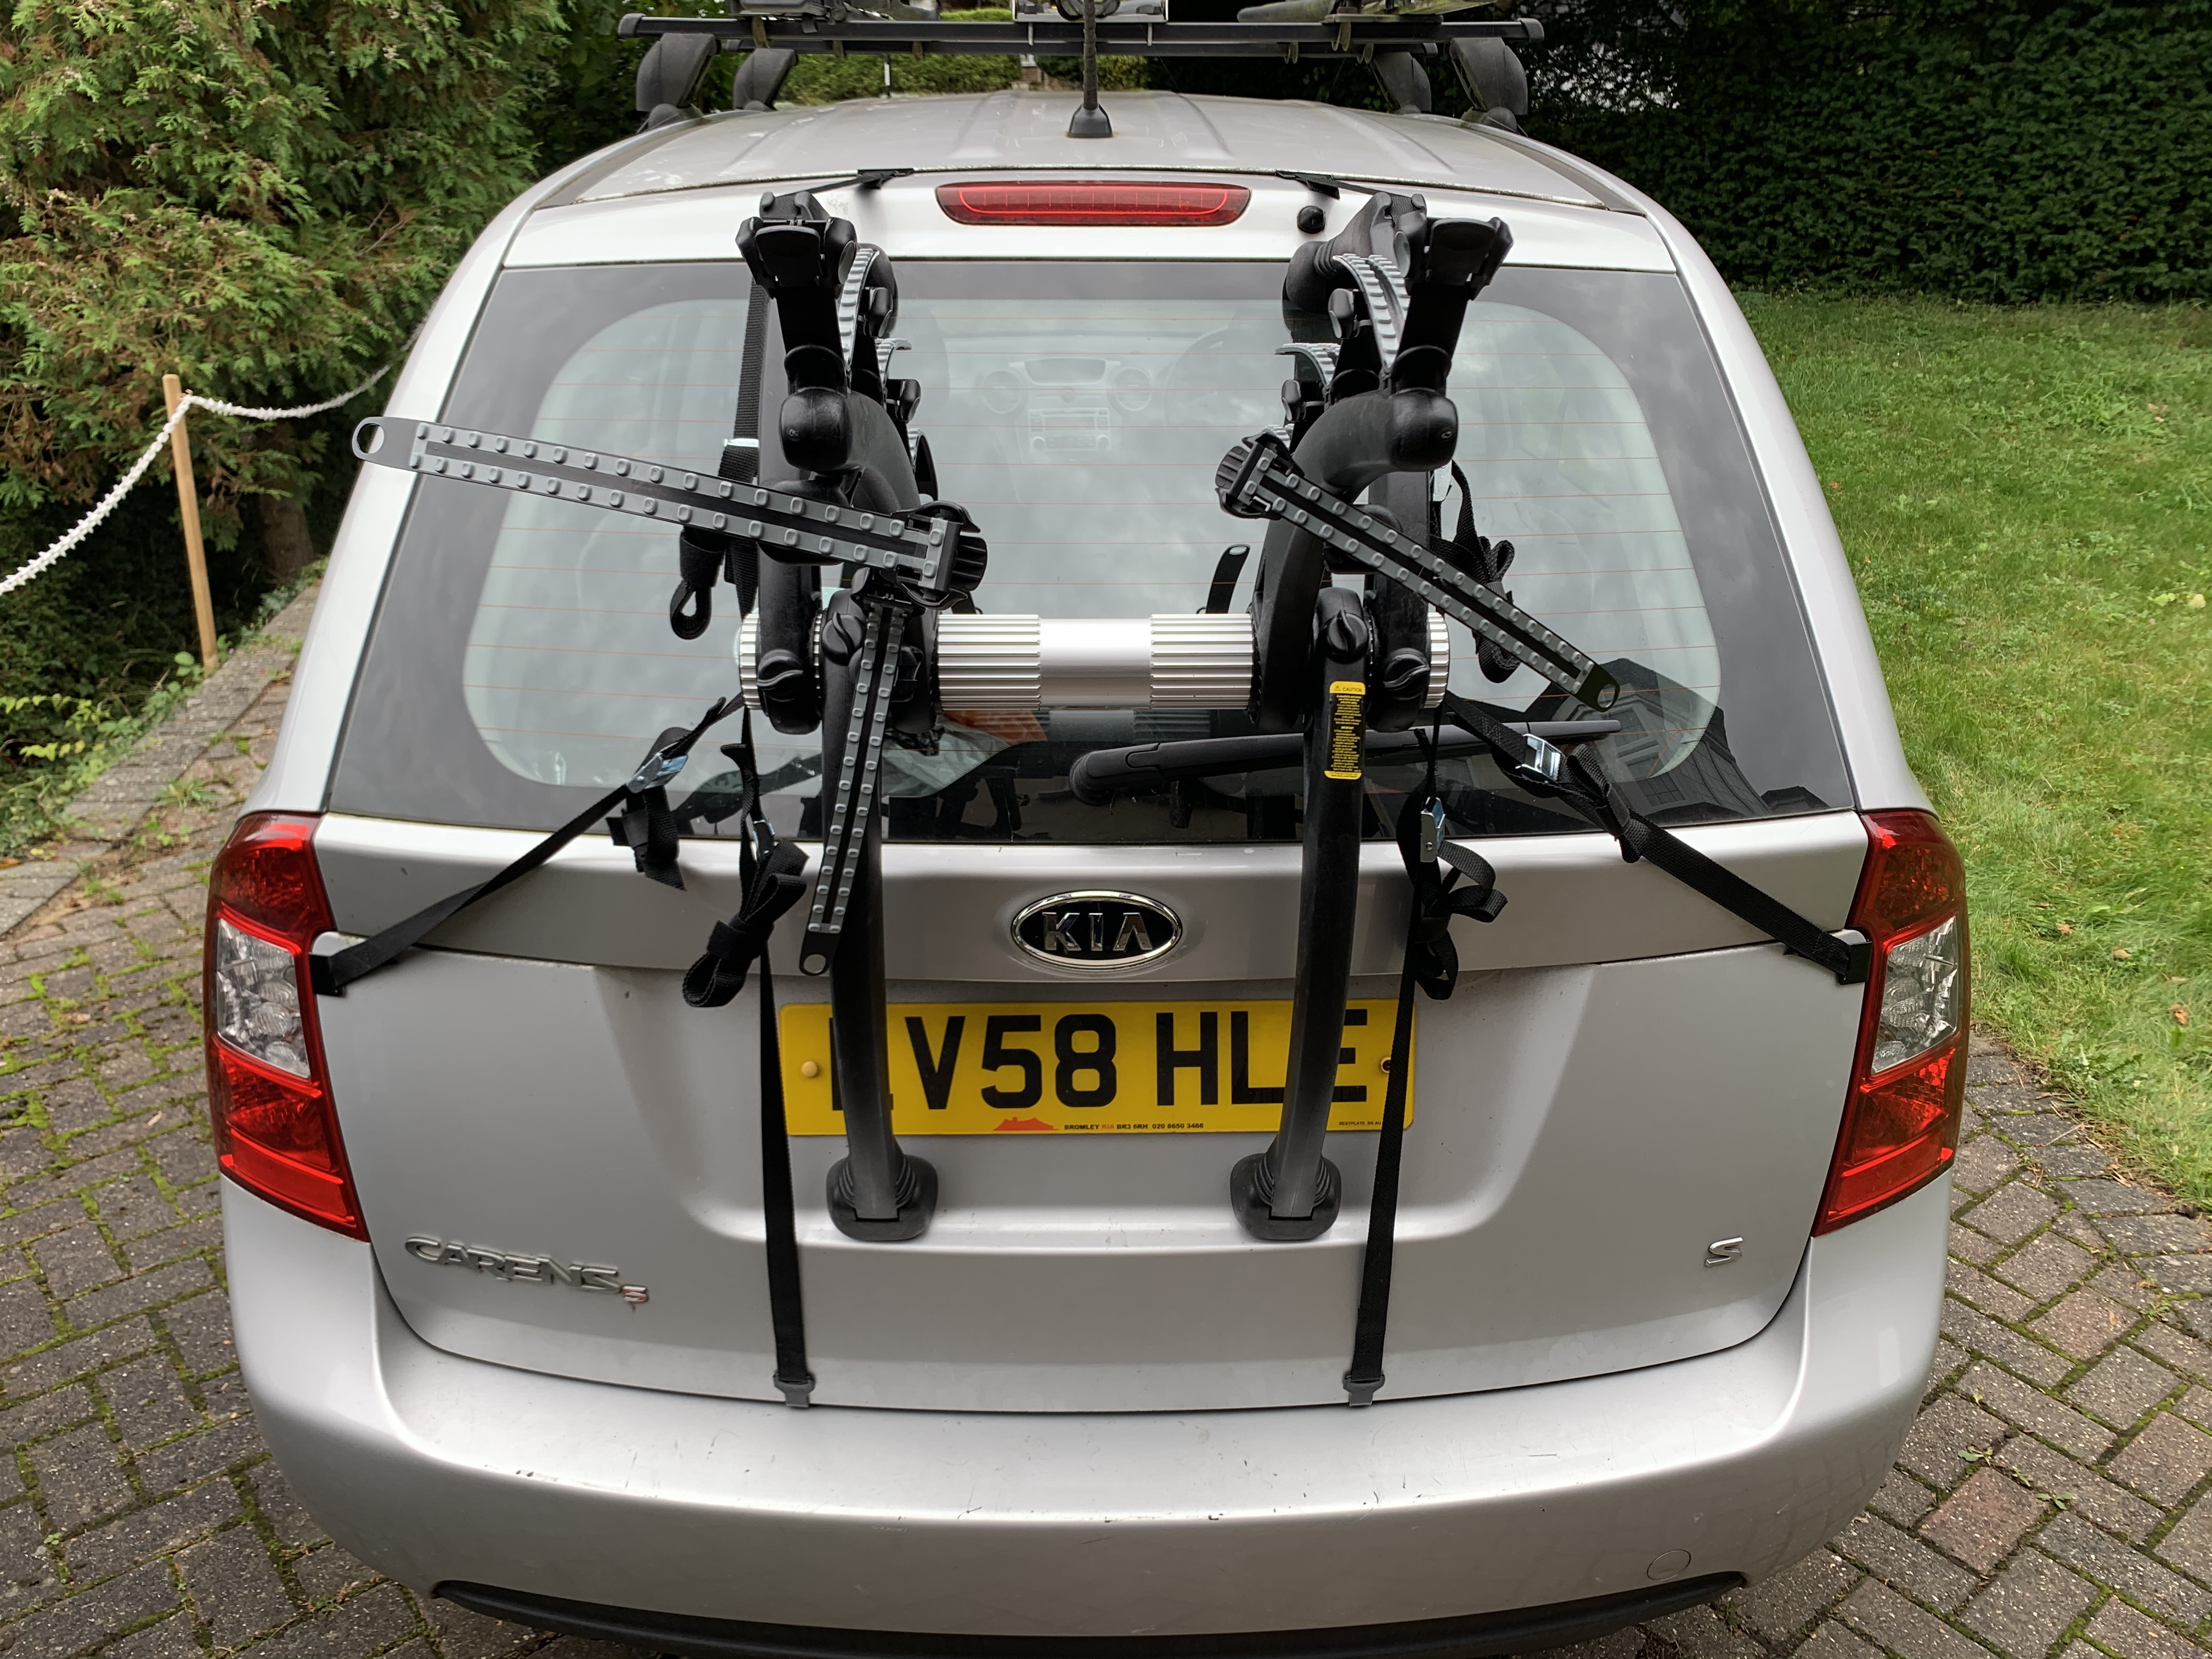 3 bike rack for car trunk